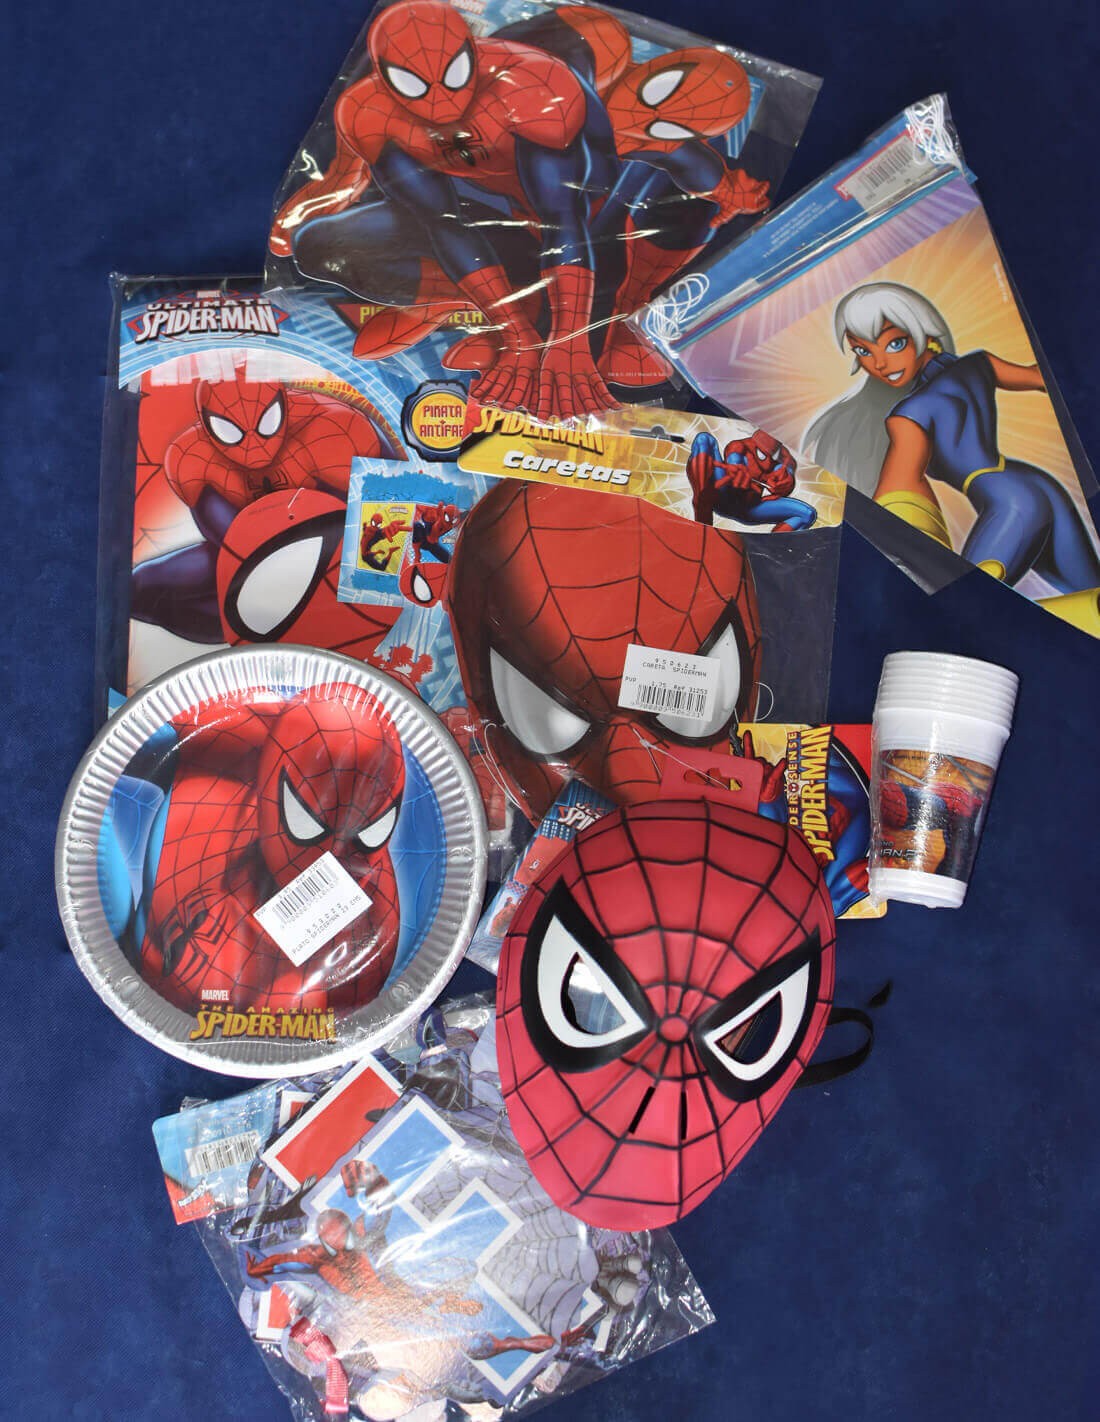 Las mejores ofertas en Suministros para fiestas de cumpleaños de Spider-Man